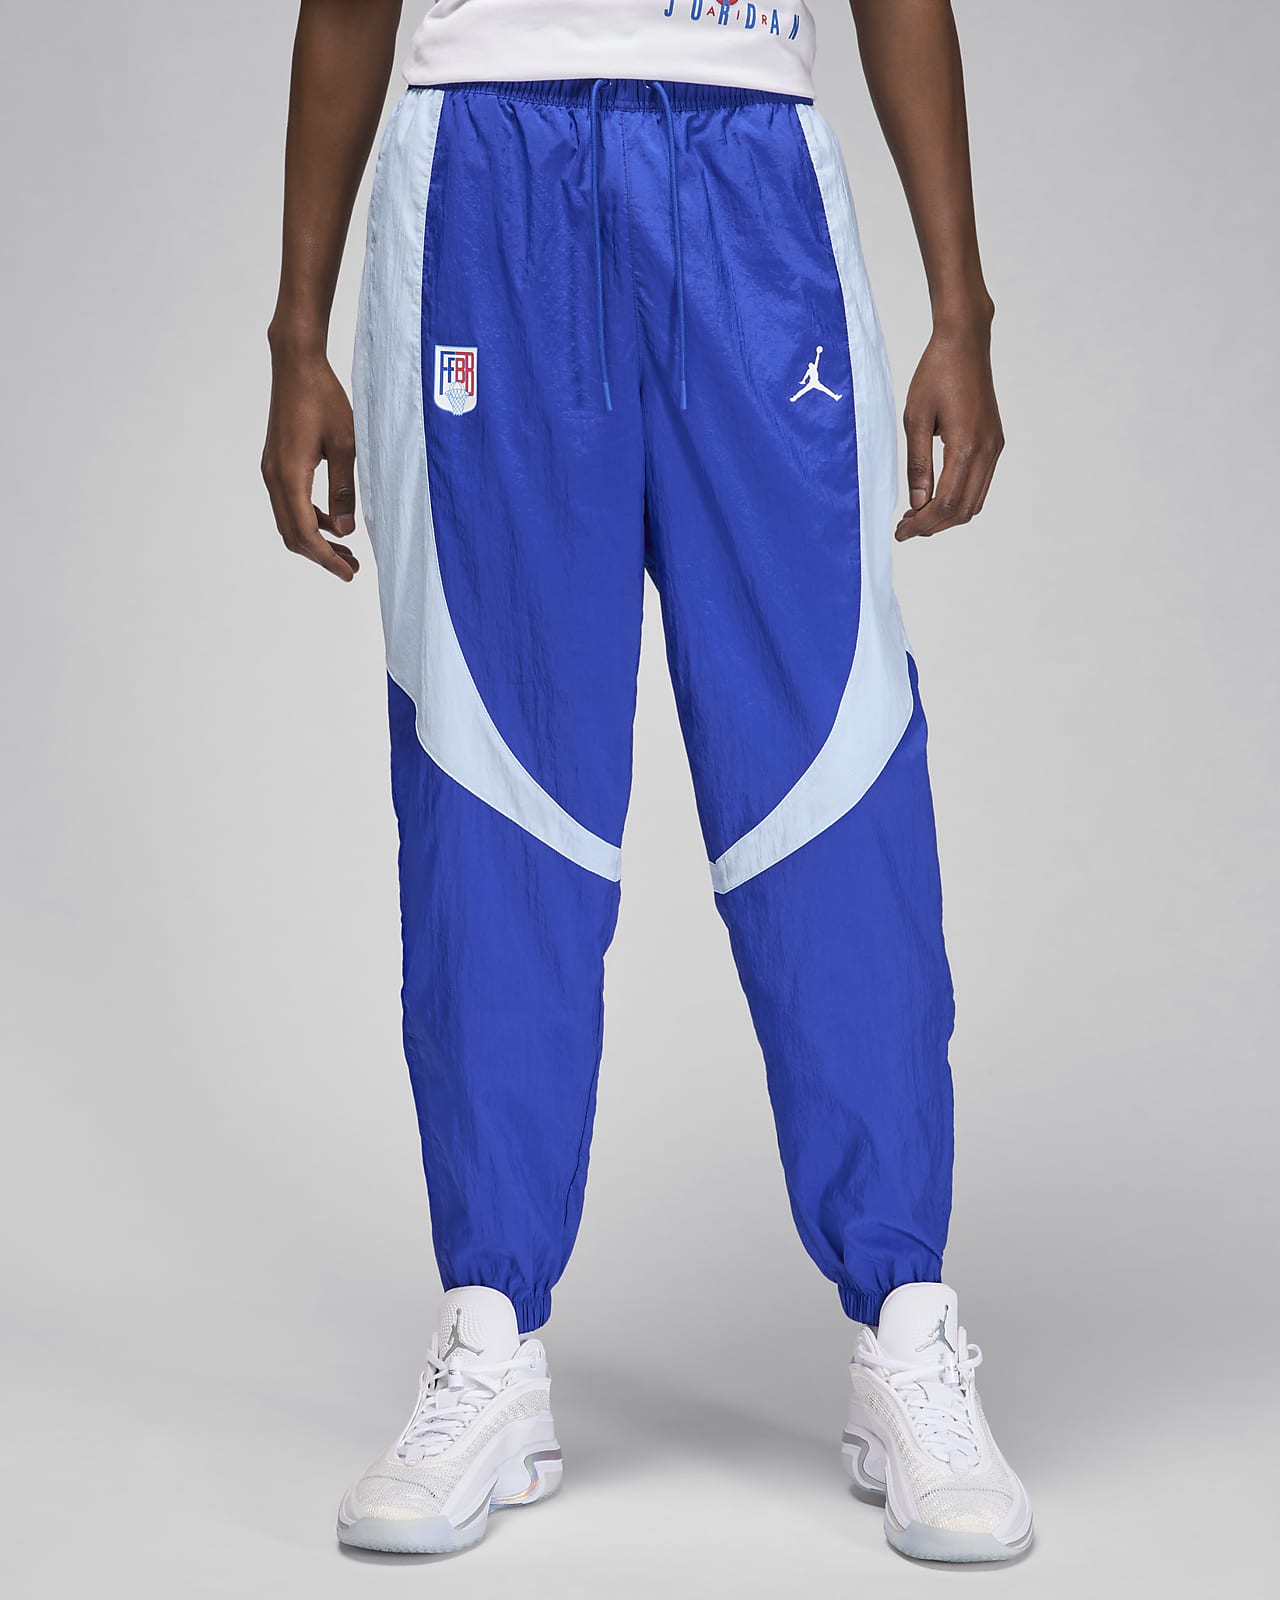 Pantaloni da riscaldamento Jordan Sport JAM x Fédération Française de Basketball – Uomo